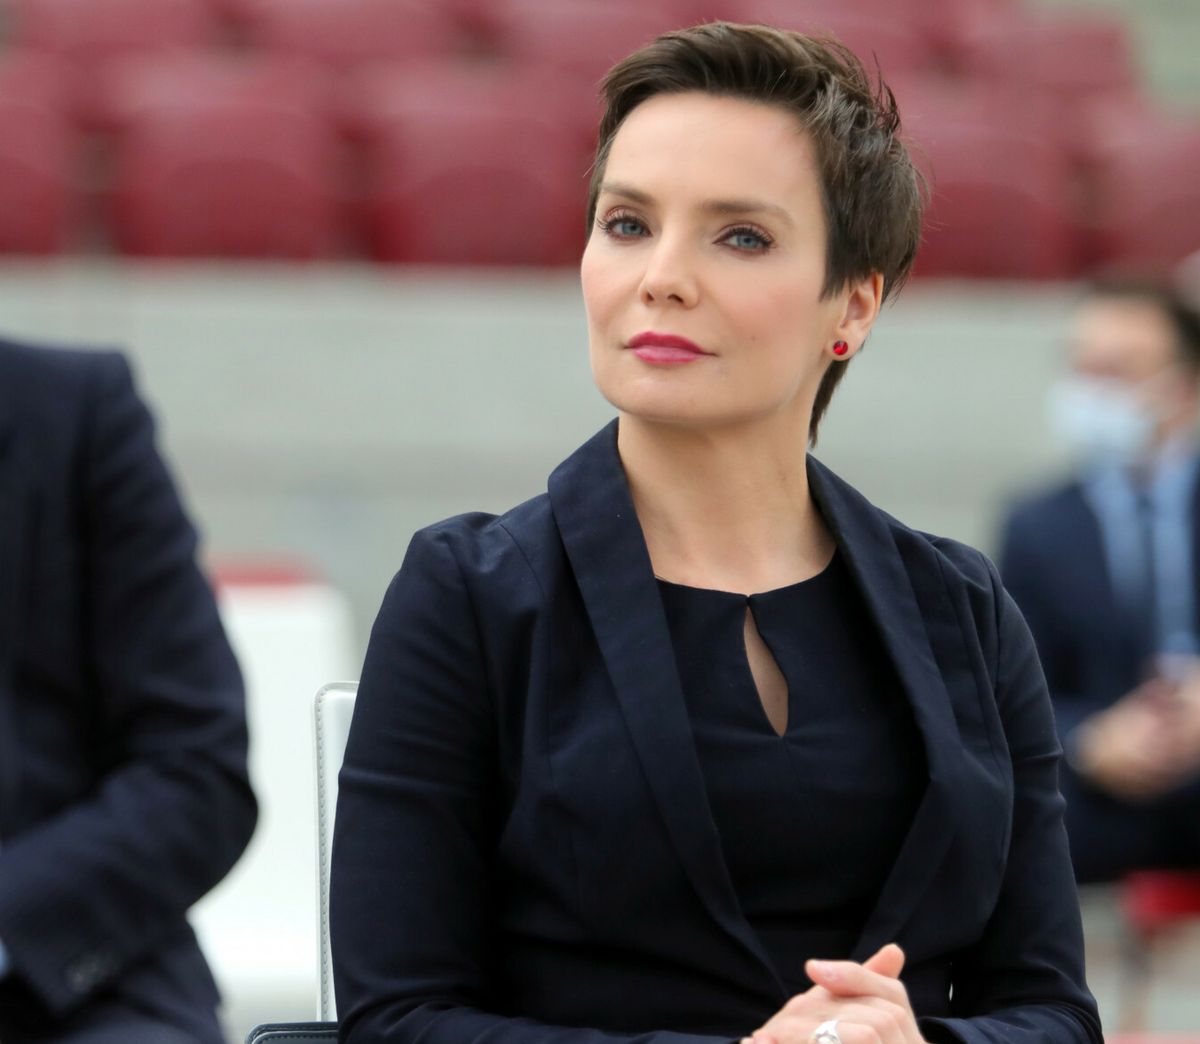 Agnieszka Kamińska ubiega się o reelekcję jako prezes Polskiego Radia